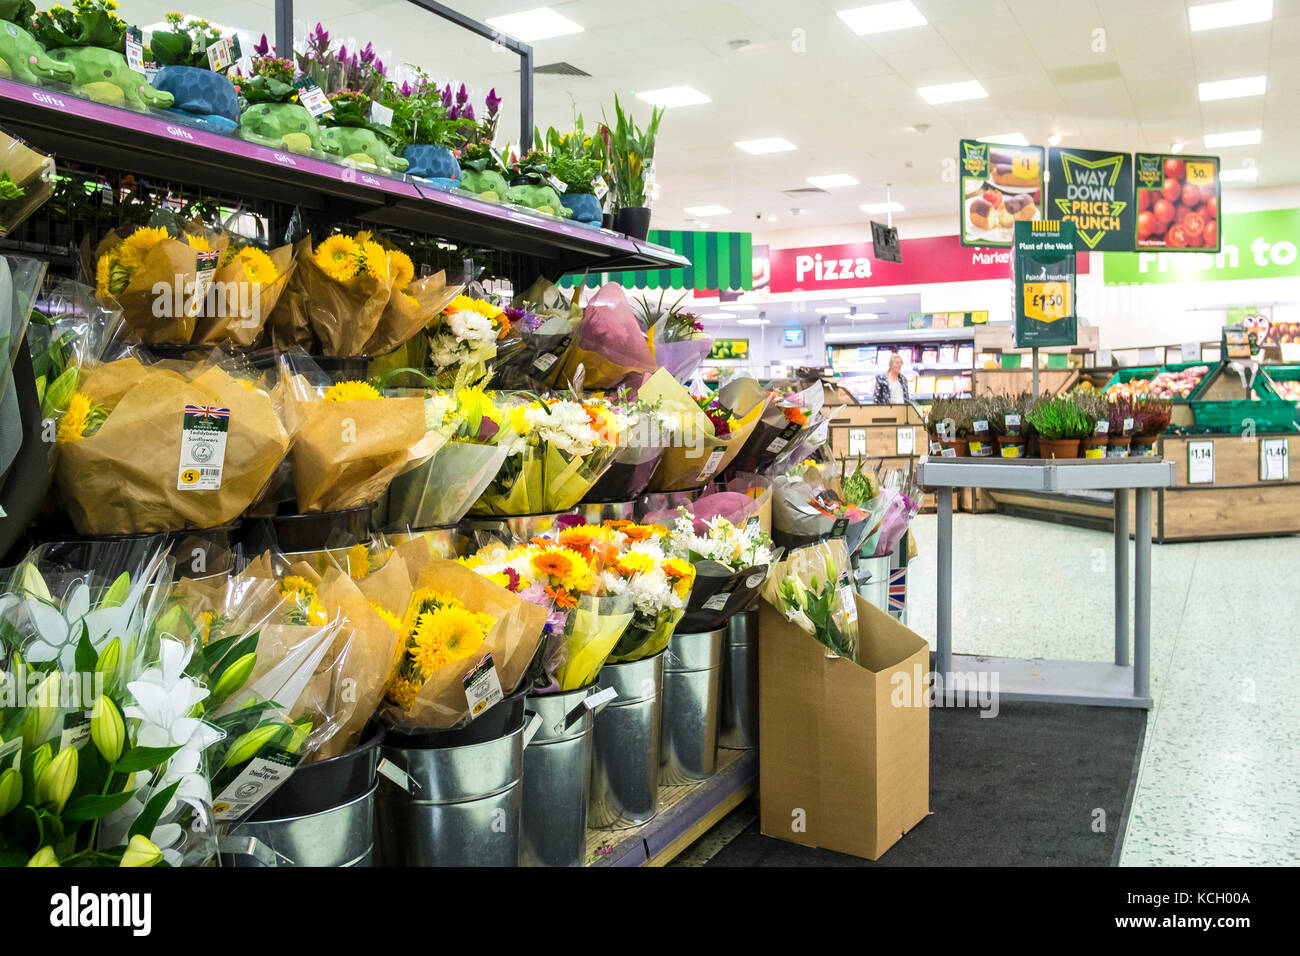 Einkaufen in einem Supermarkt - Blumensträuße auf dem Display und zum Verkauf in einem Morrisons Supermarkt. Stockfoto